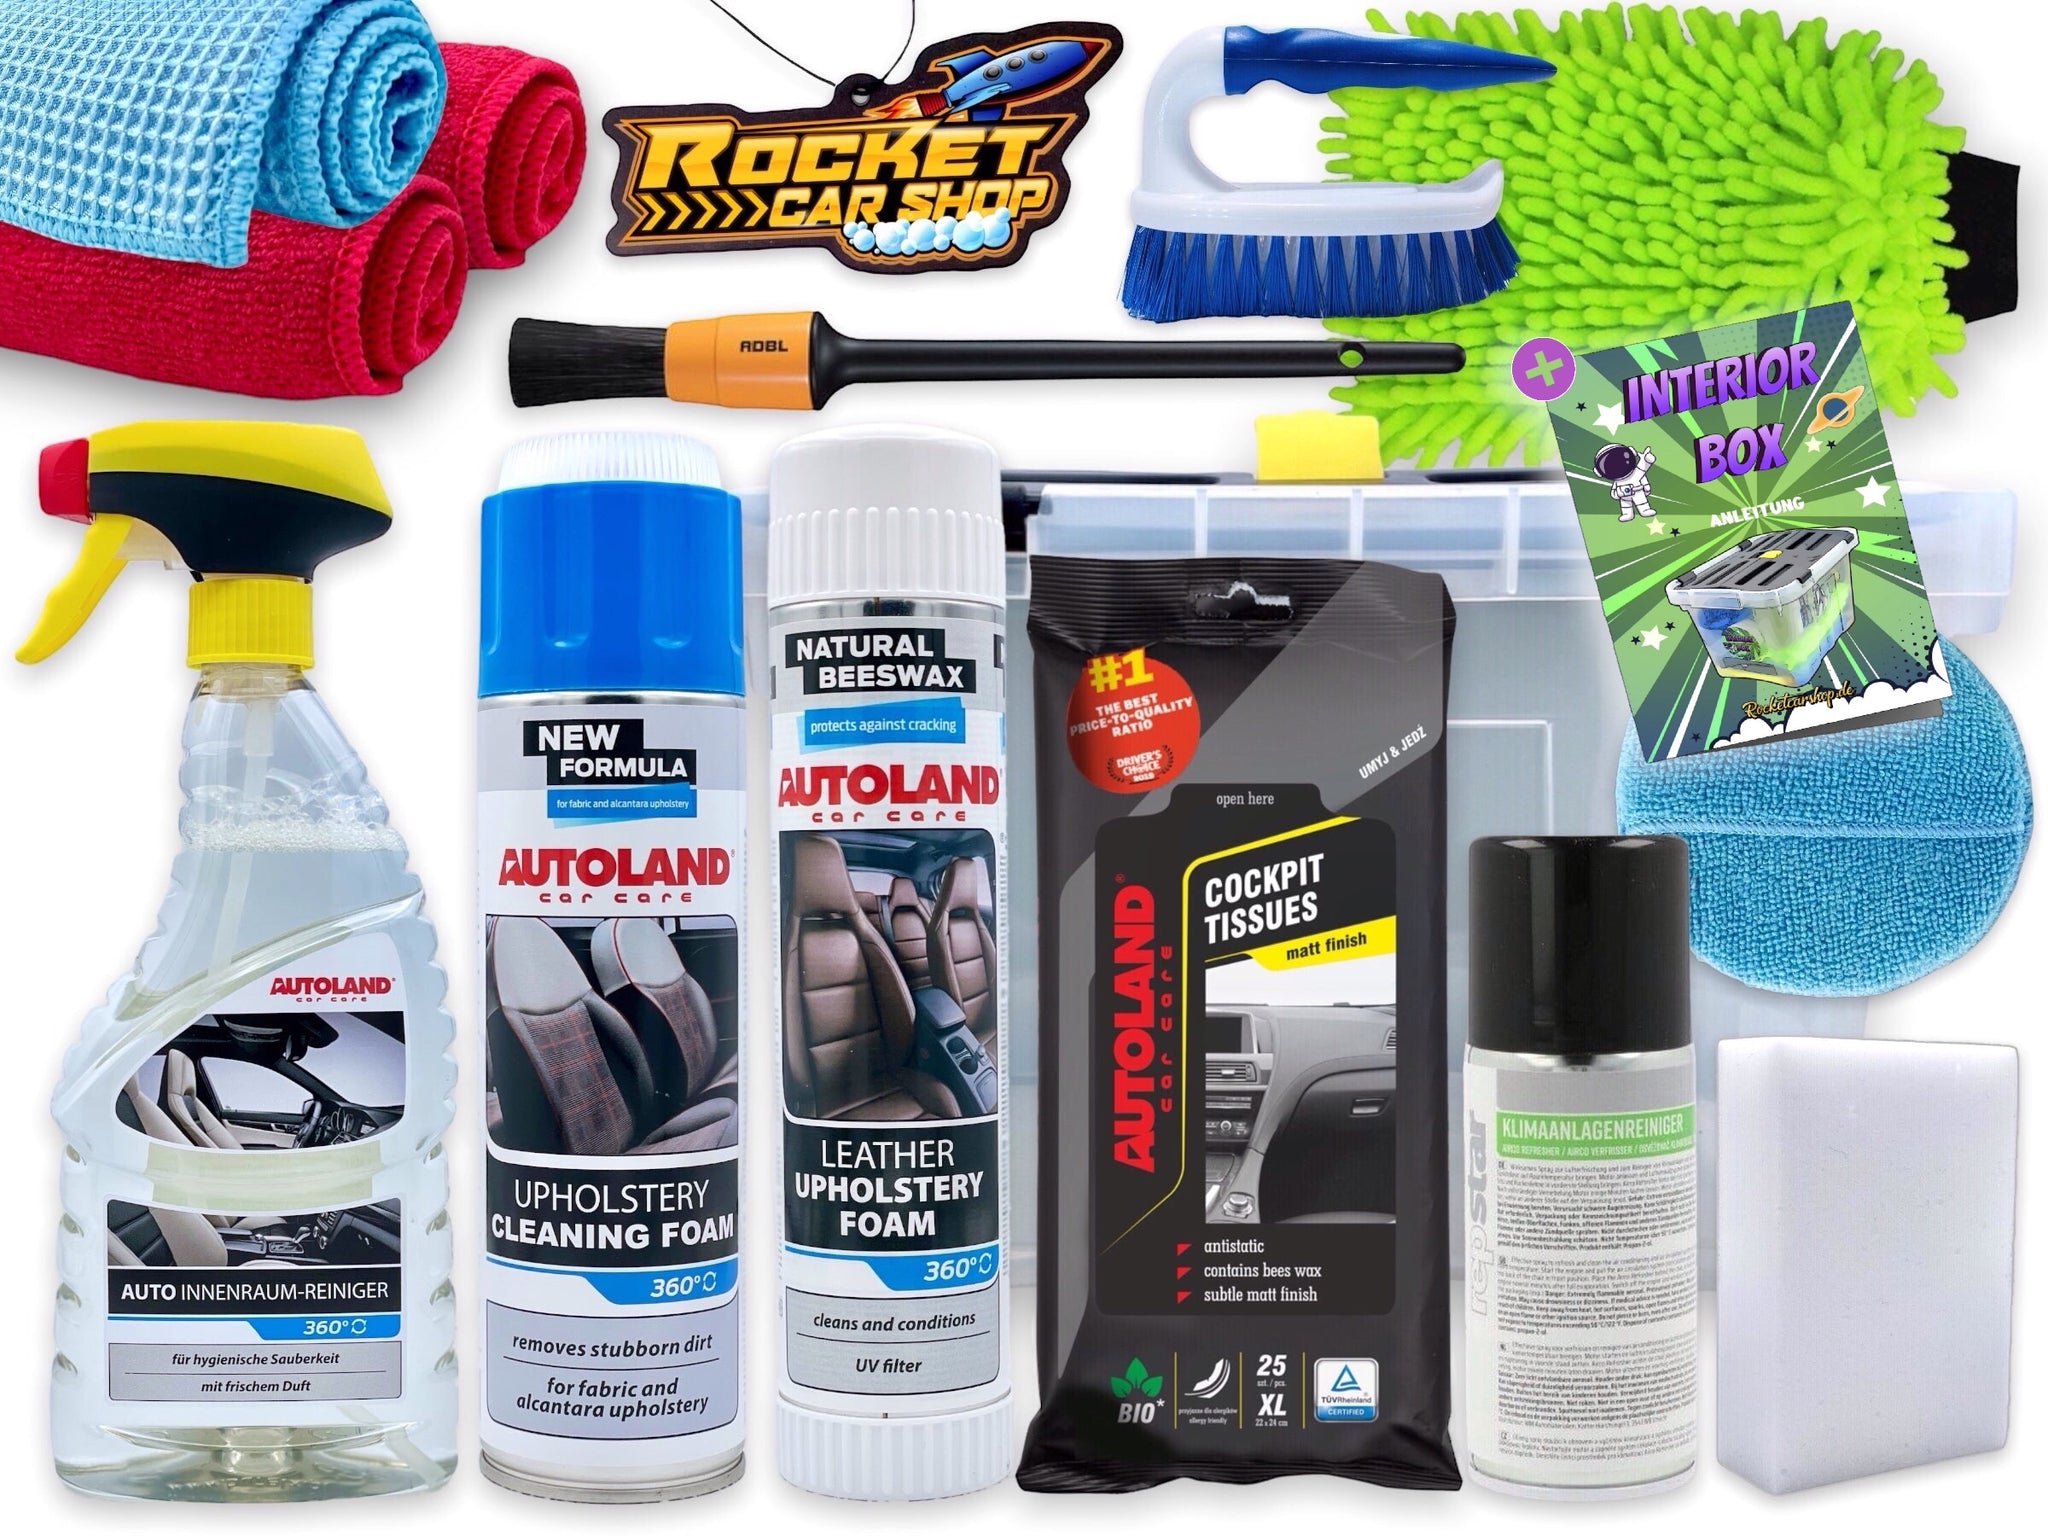 autopflege set innenraum interior kit fahrzeug innenraumreiniger autopflege set putzset für pkw geschenkset geschenkidee für männer